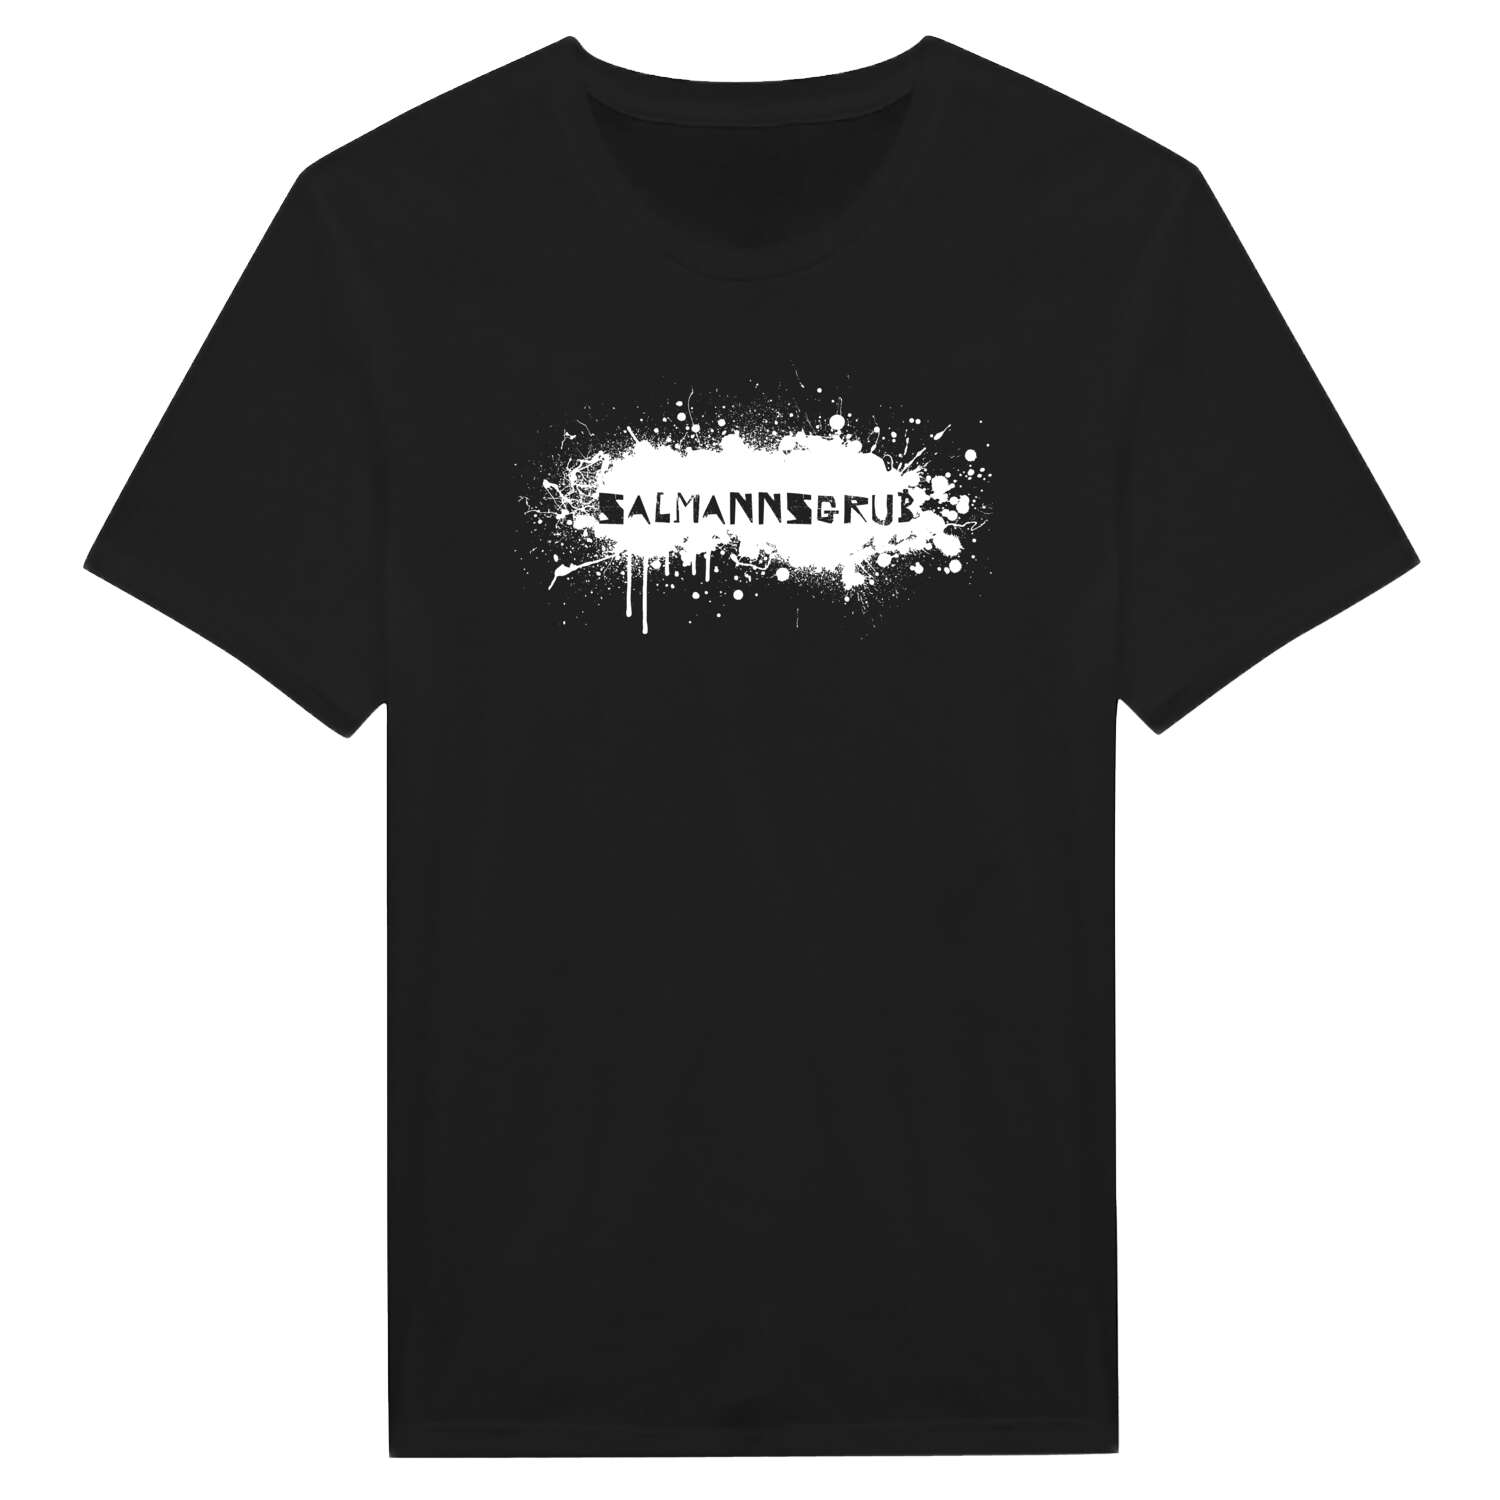 Salmannsgrub T-Shirt »Paint Splash Punk«